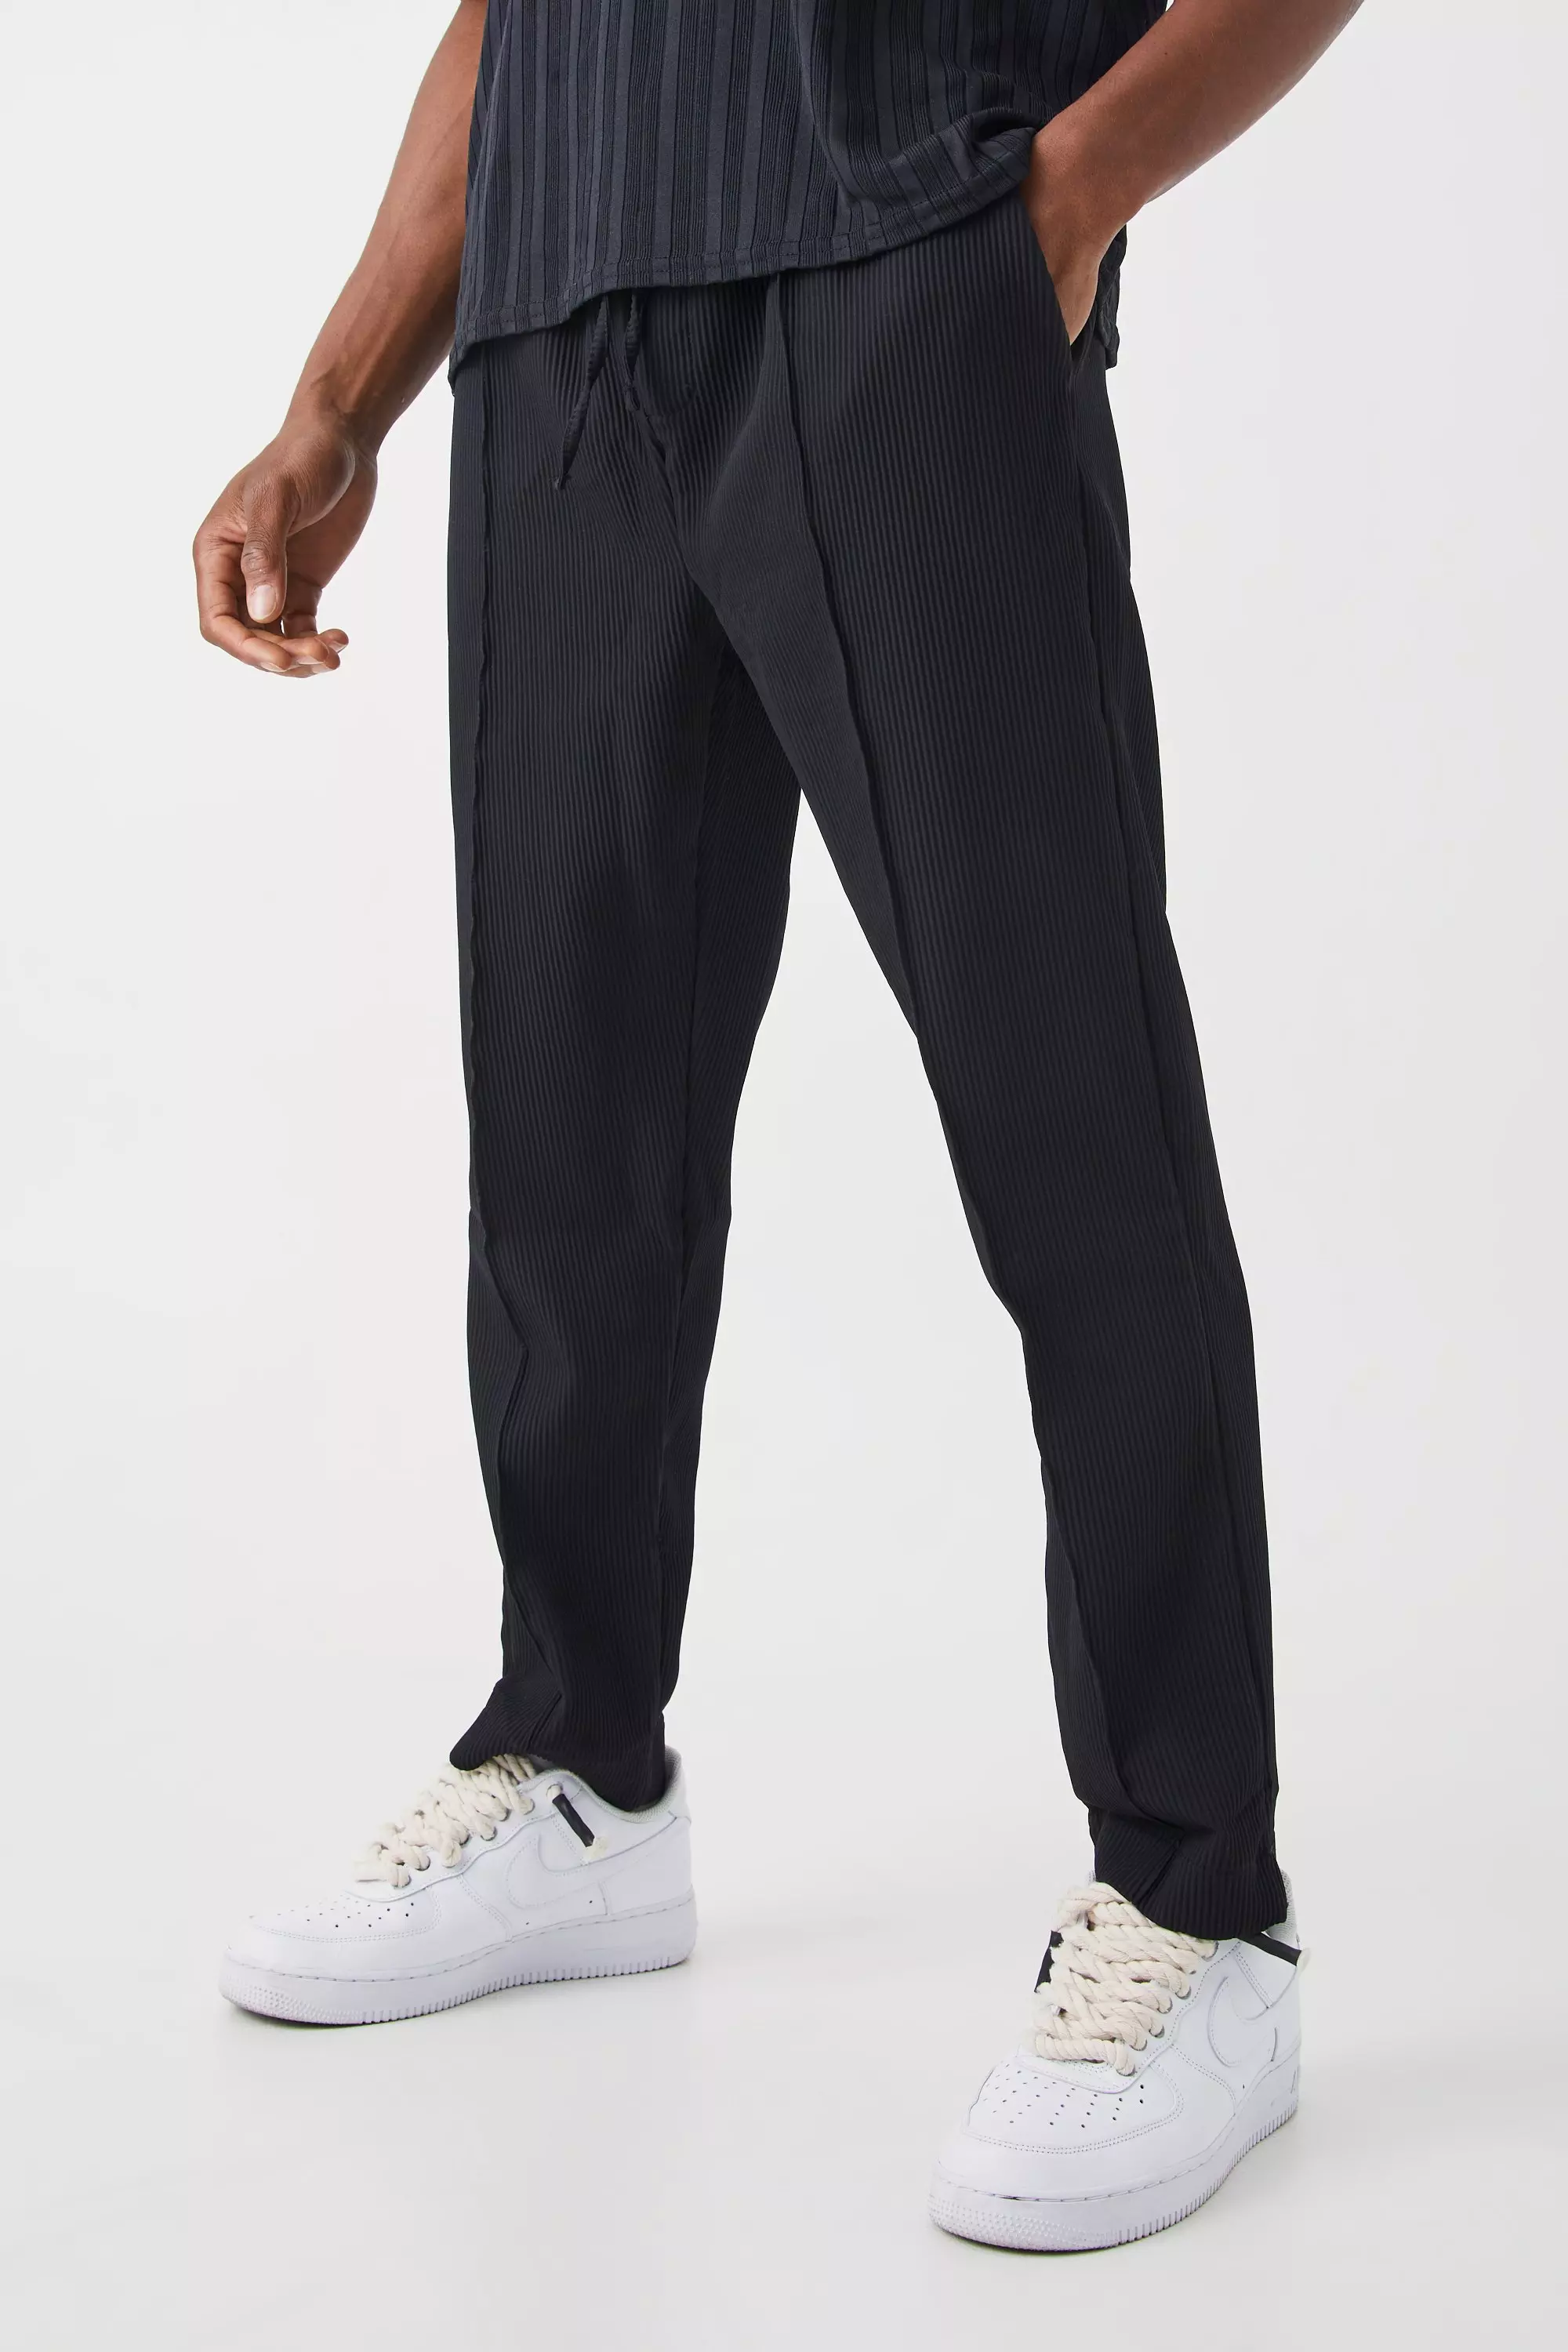 Black Pleated Slim Elasticated Waistband Pants